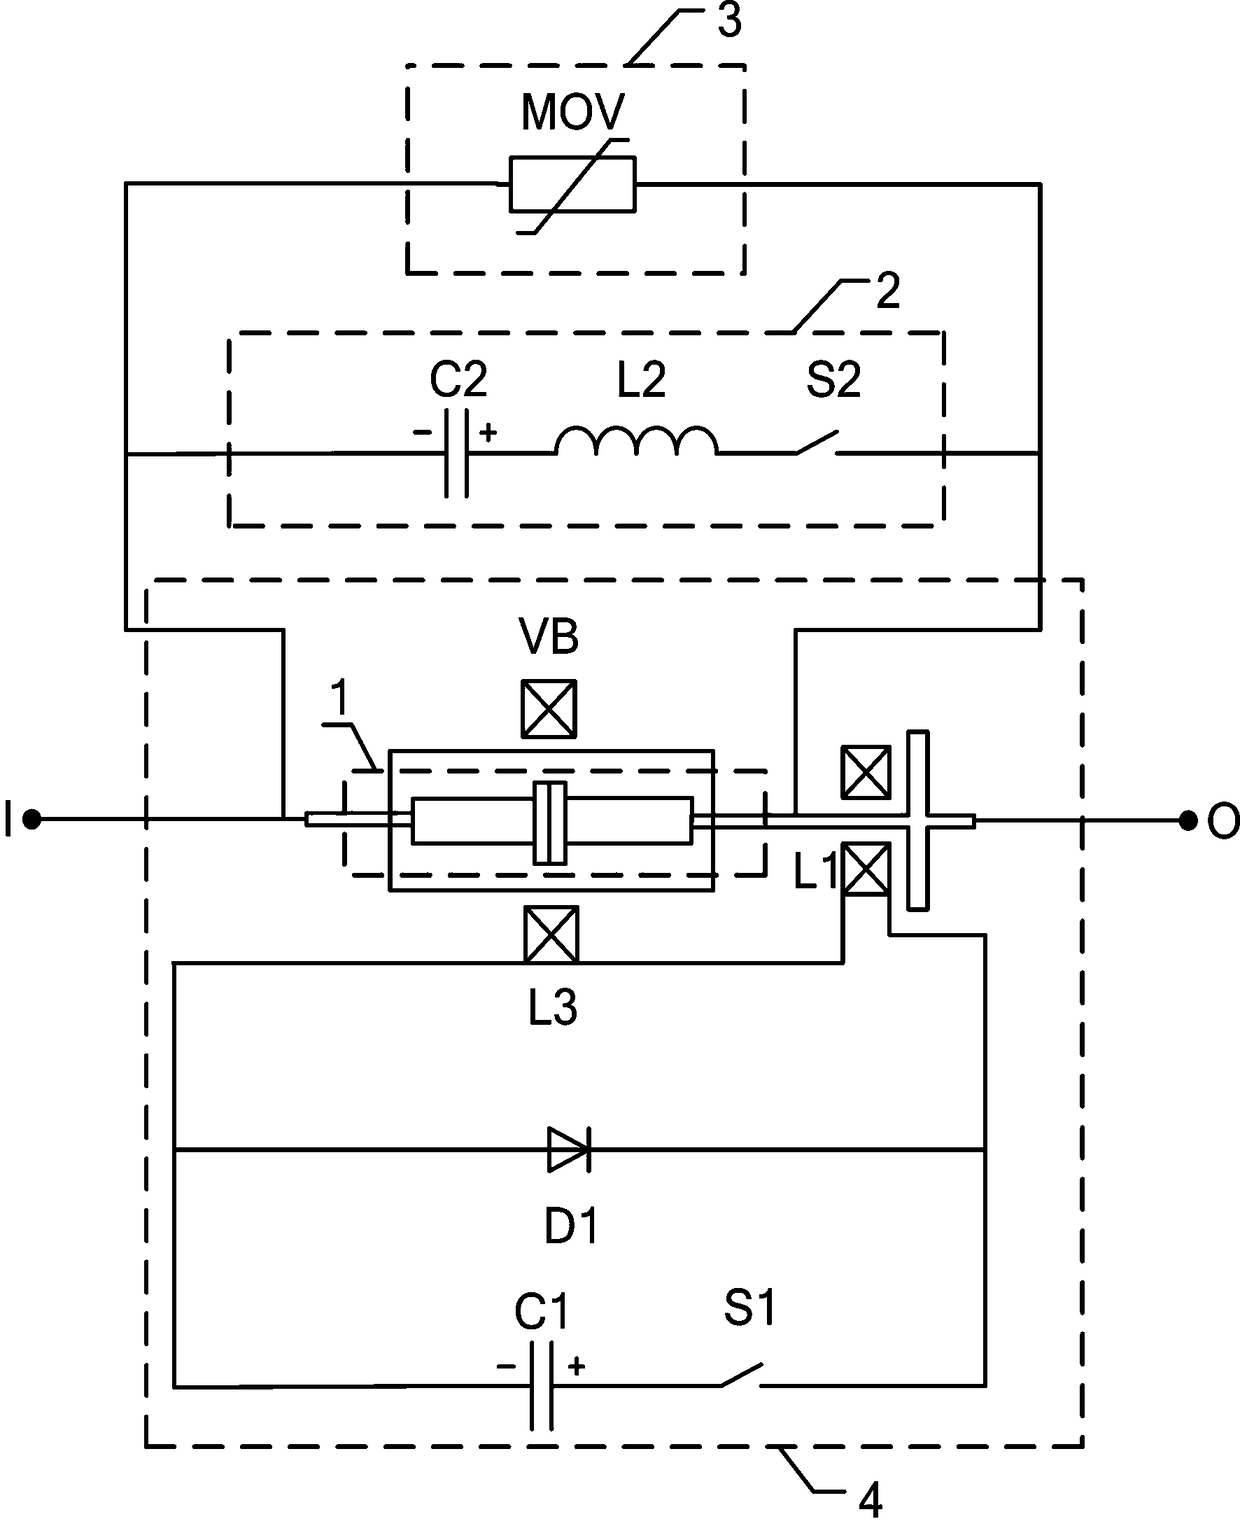 Direct-current vacuum circuit breaker